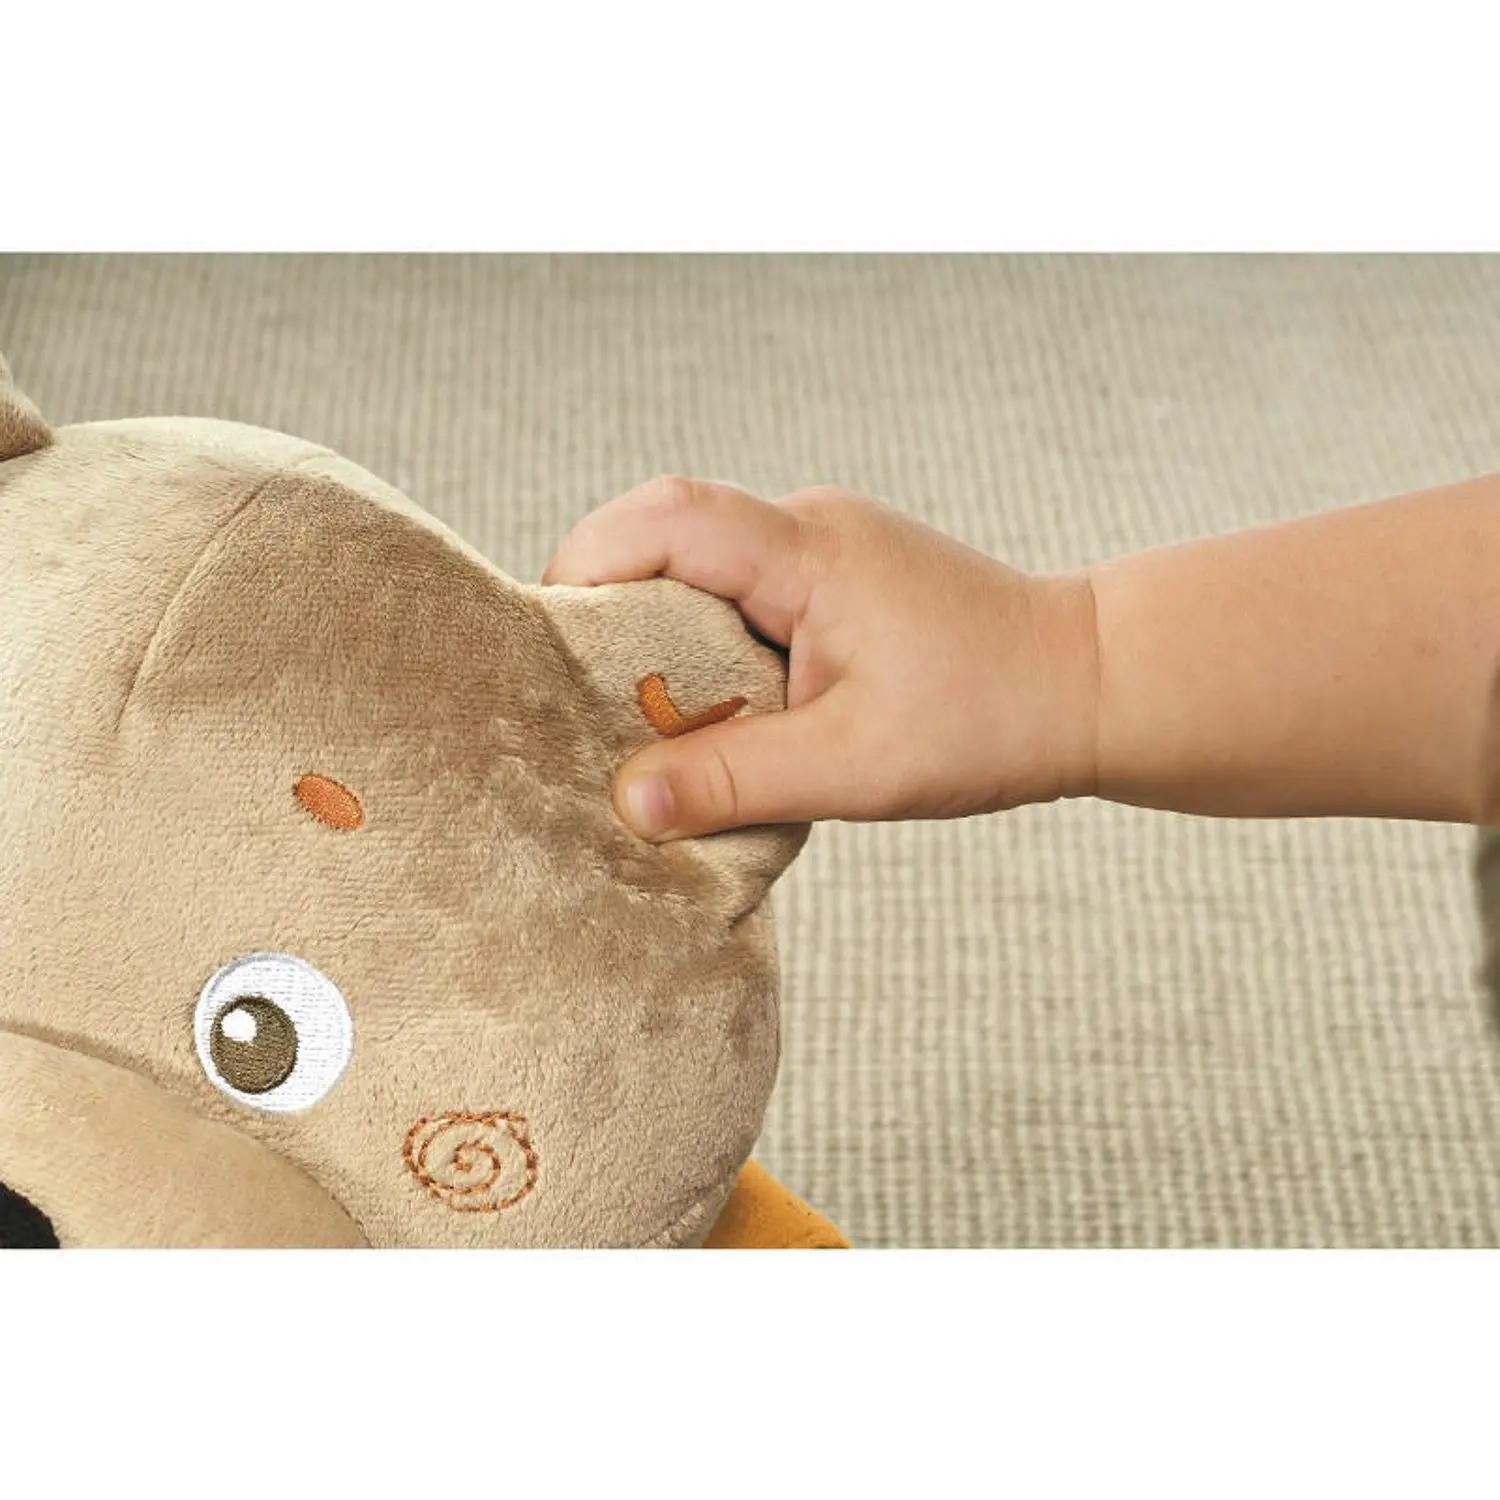 Chicco englisch russisch sprechender Teddybär Kuscheltier Plüschtier Kinderspielzeug 